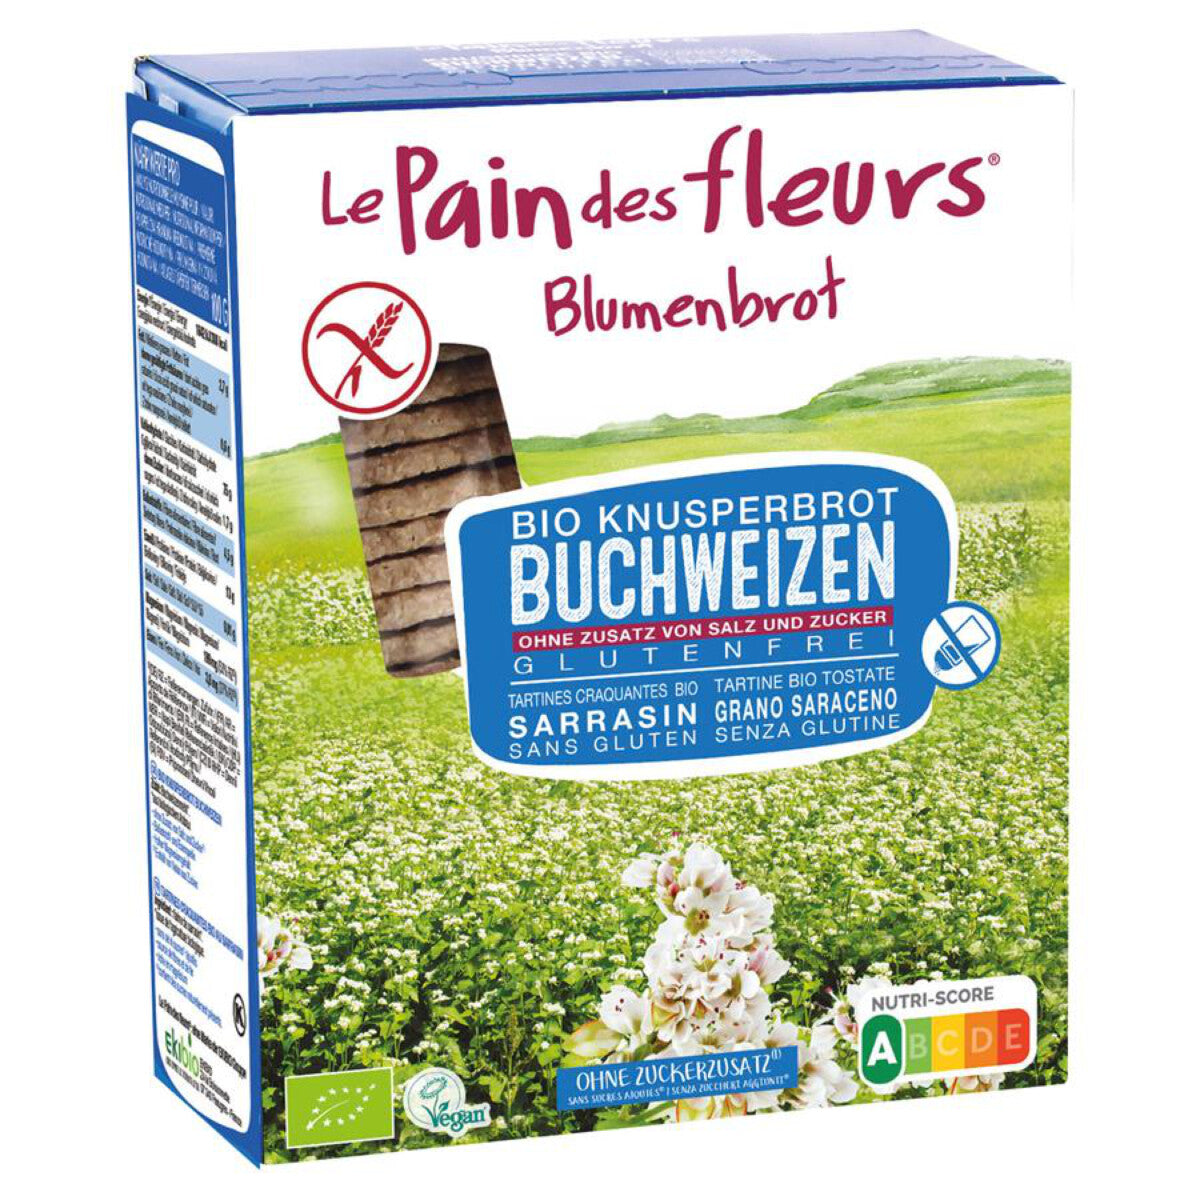 BLUMENBROT Knusperbrot Buchweizen - 150 g